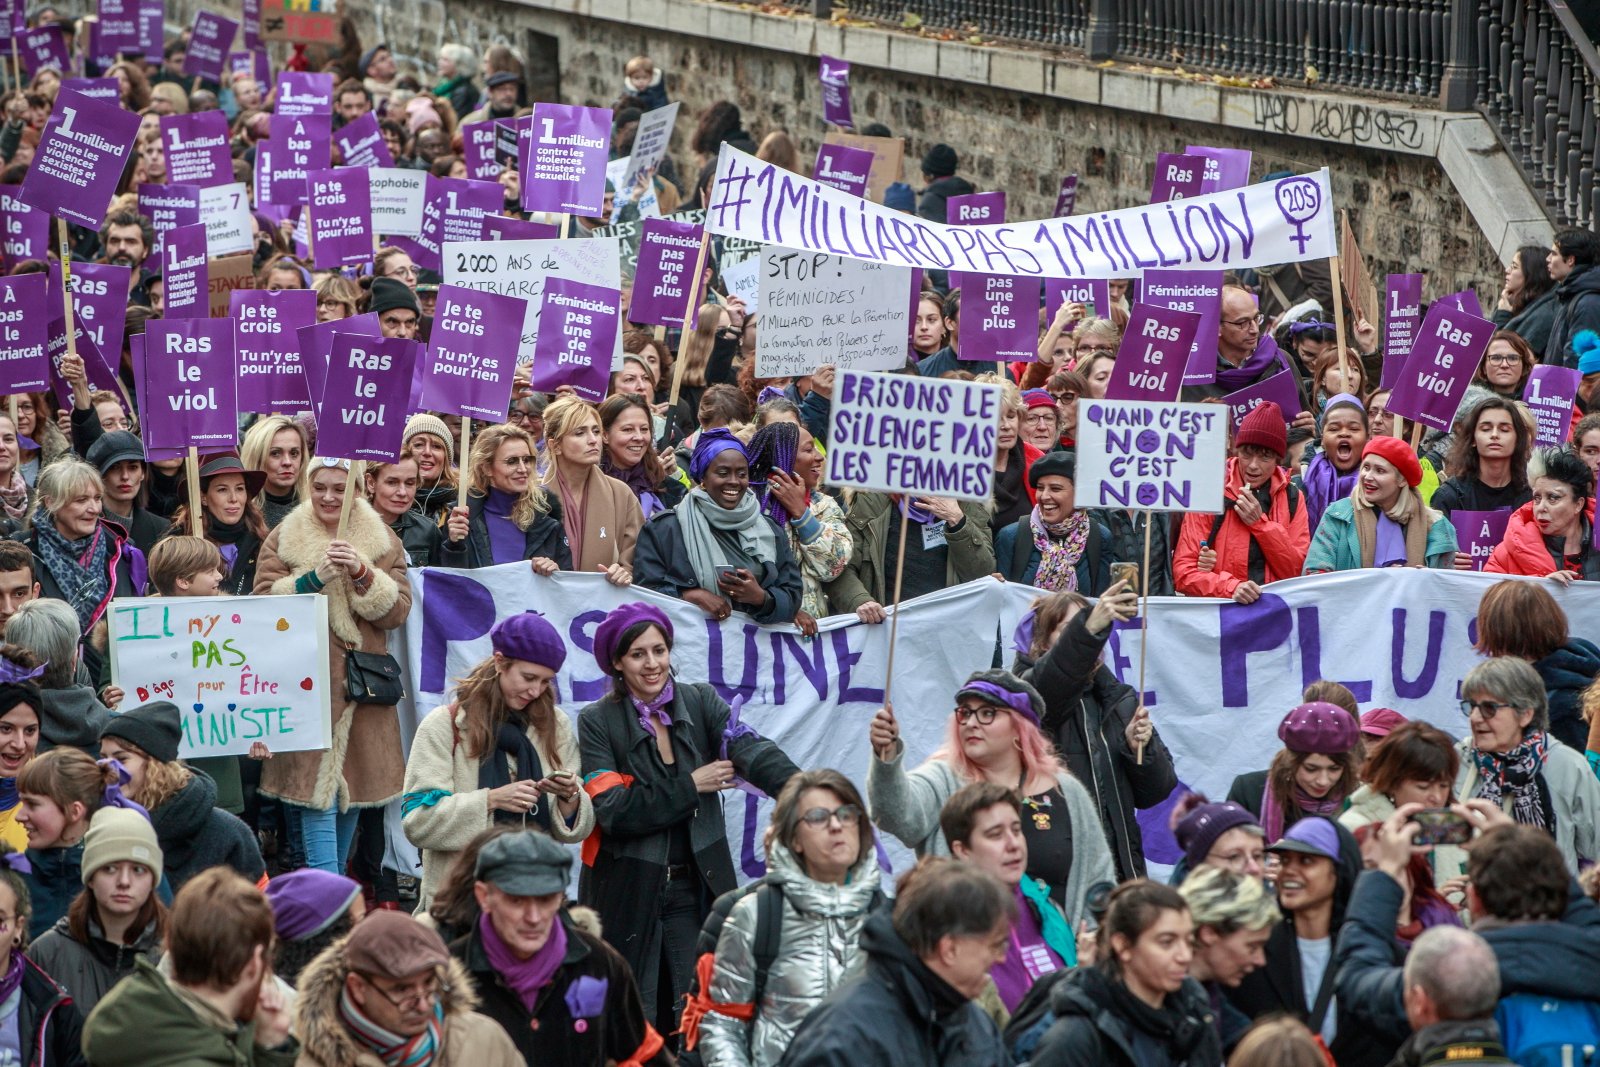 Kobiecy protest przeciwko wykorzystywaniu seksualnemu kobiet w Paryżu. Fot. EPA/CHRISTOPHE PETIT TESSON 